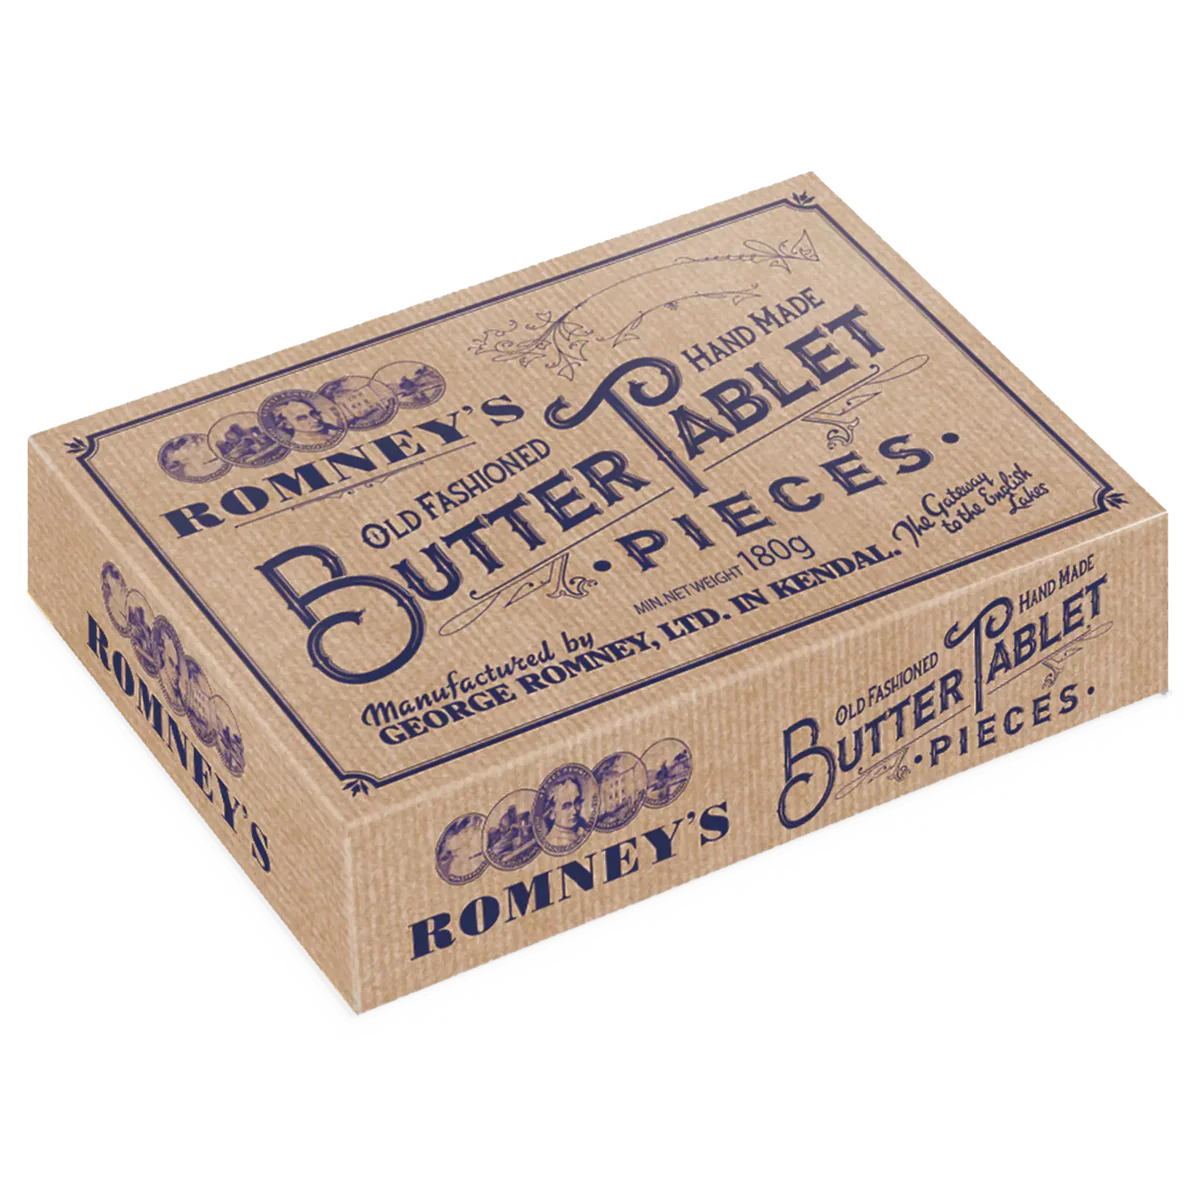 Romney's Butter Tablet